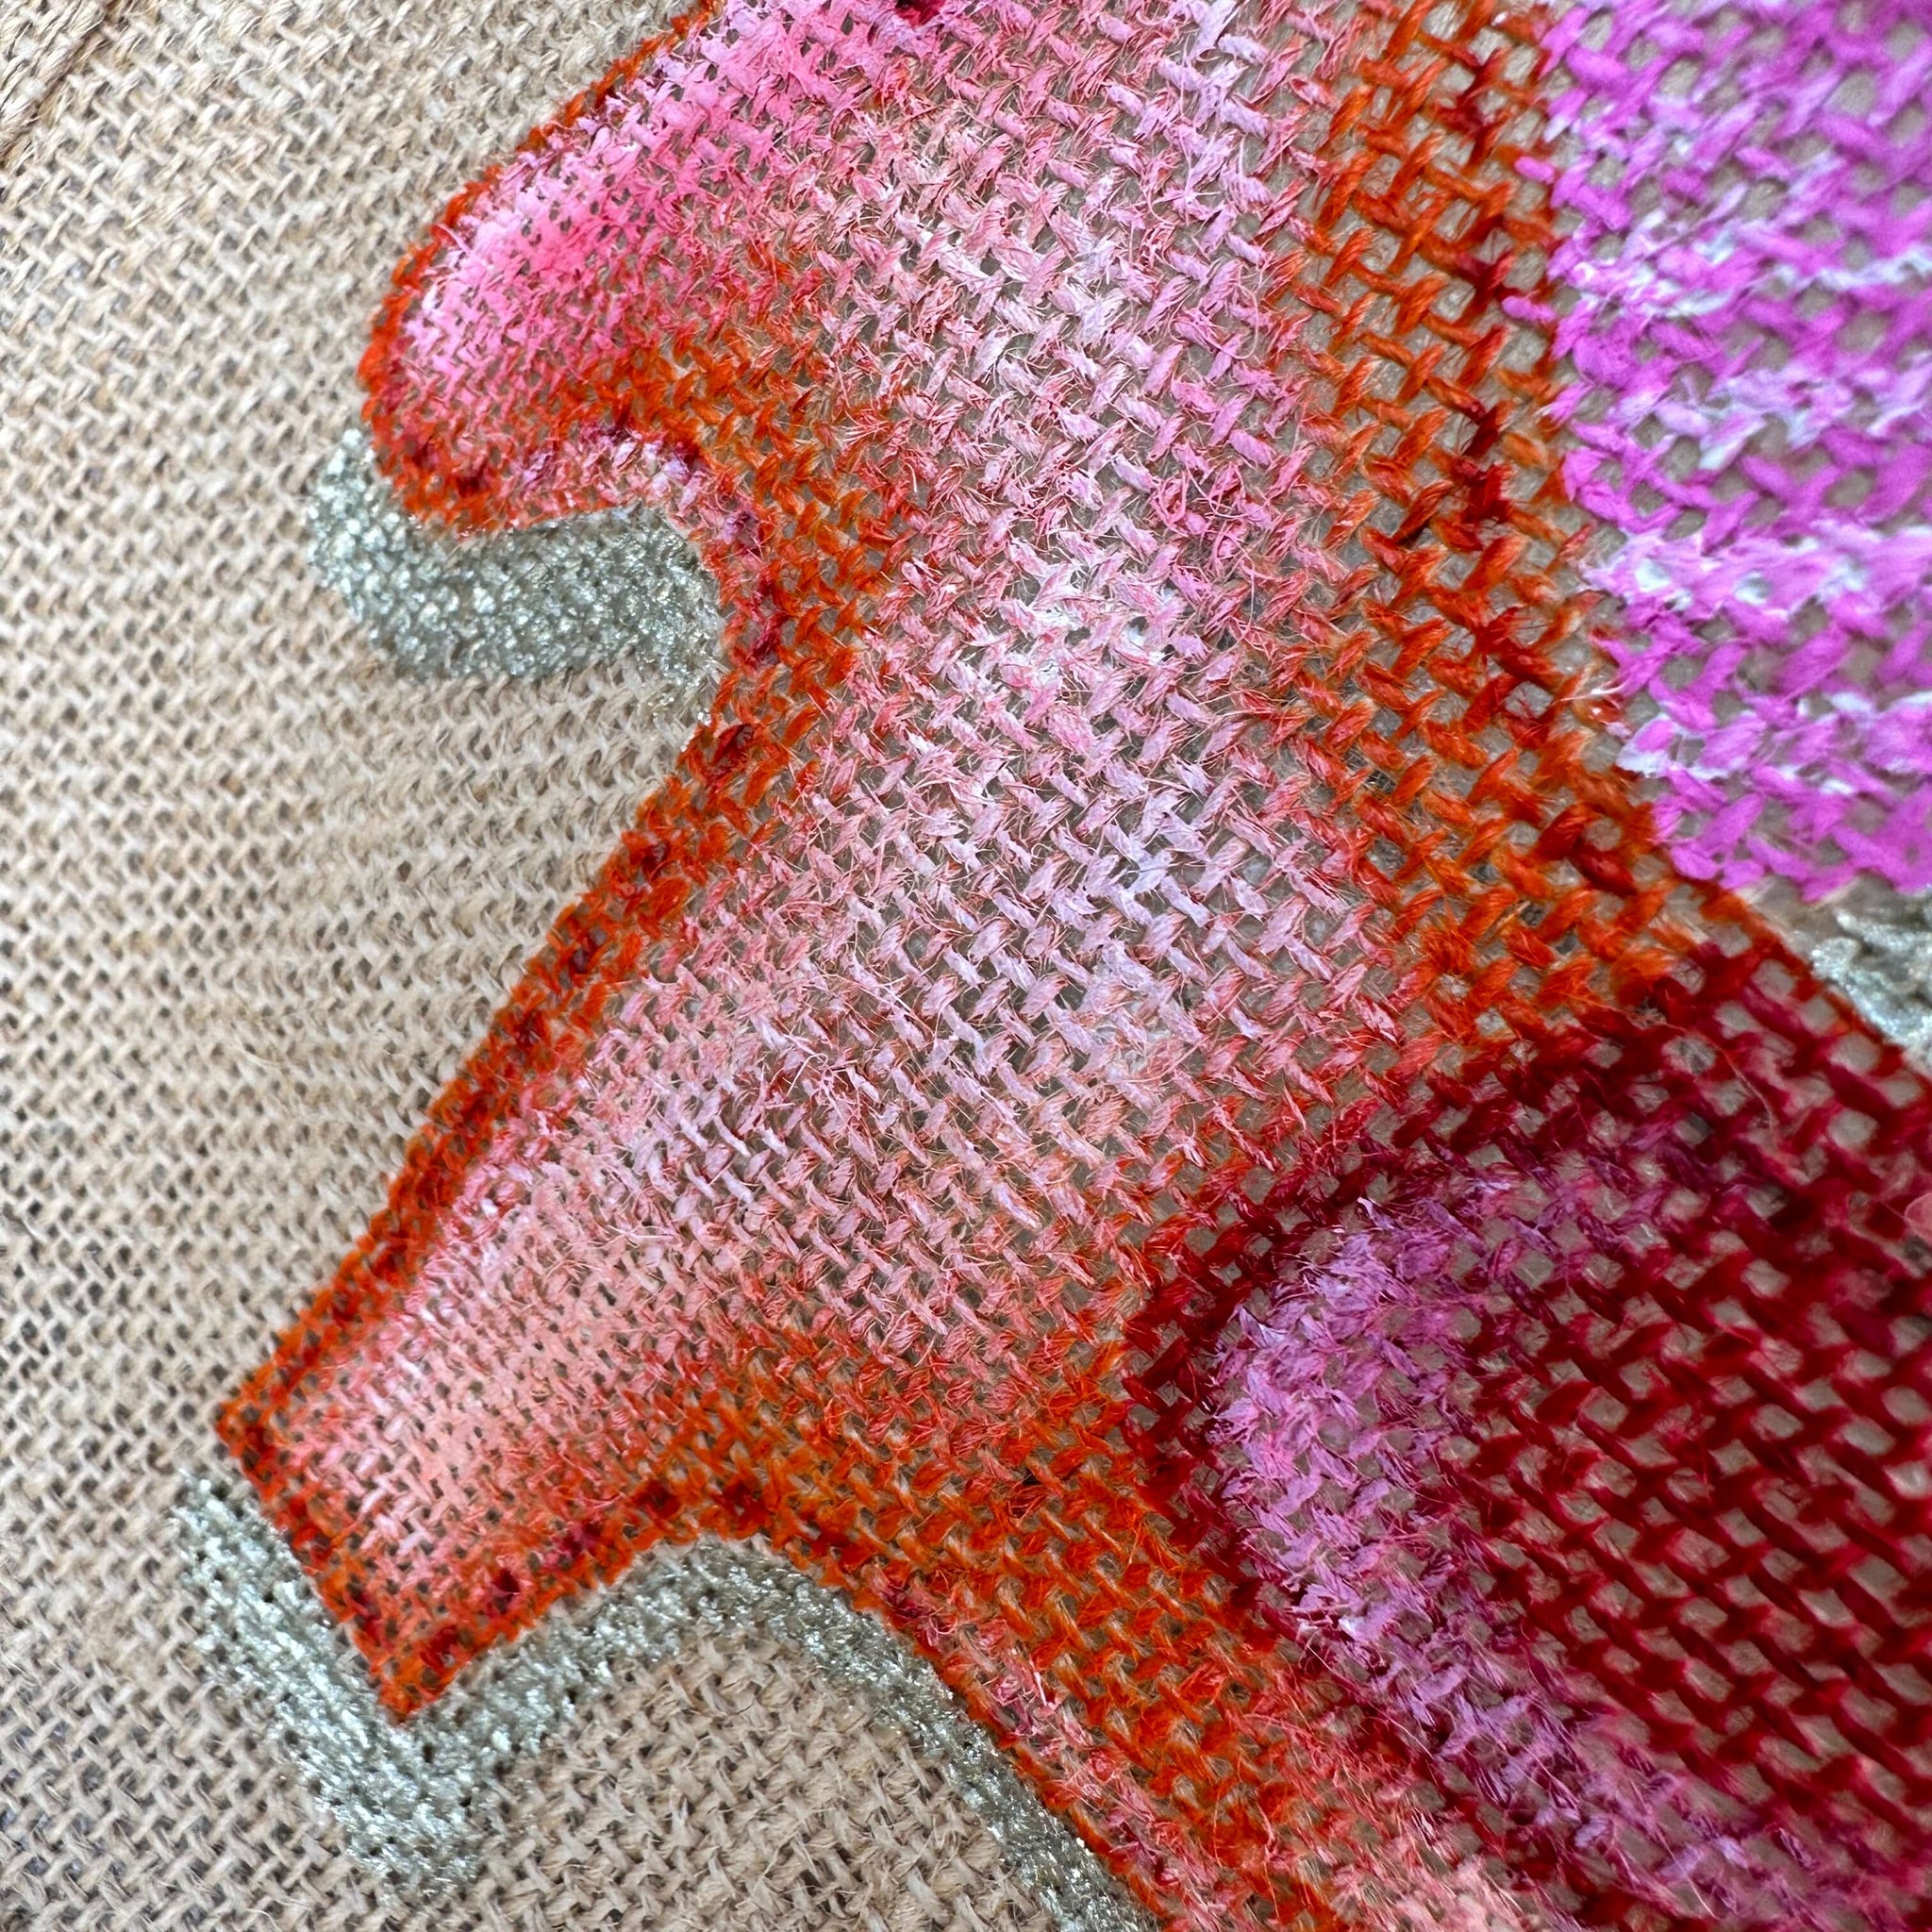 Art Bag "Horse Orange", 26x22cm